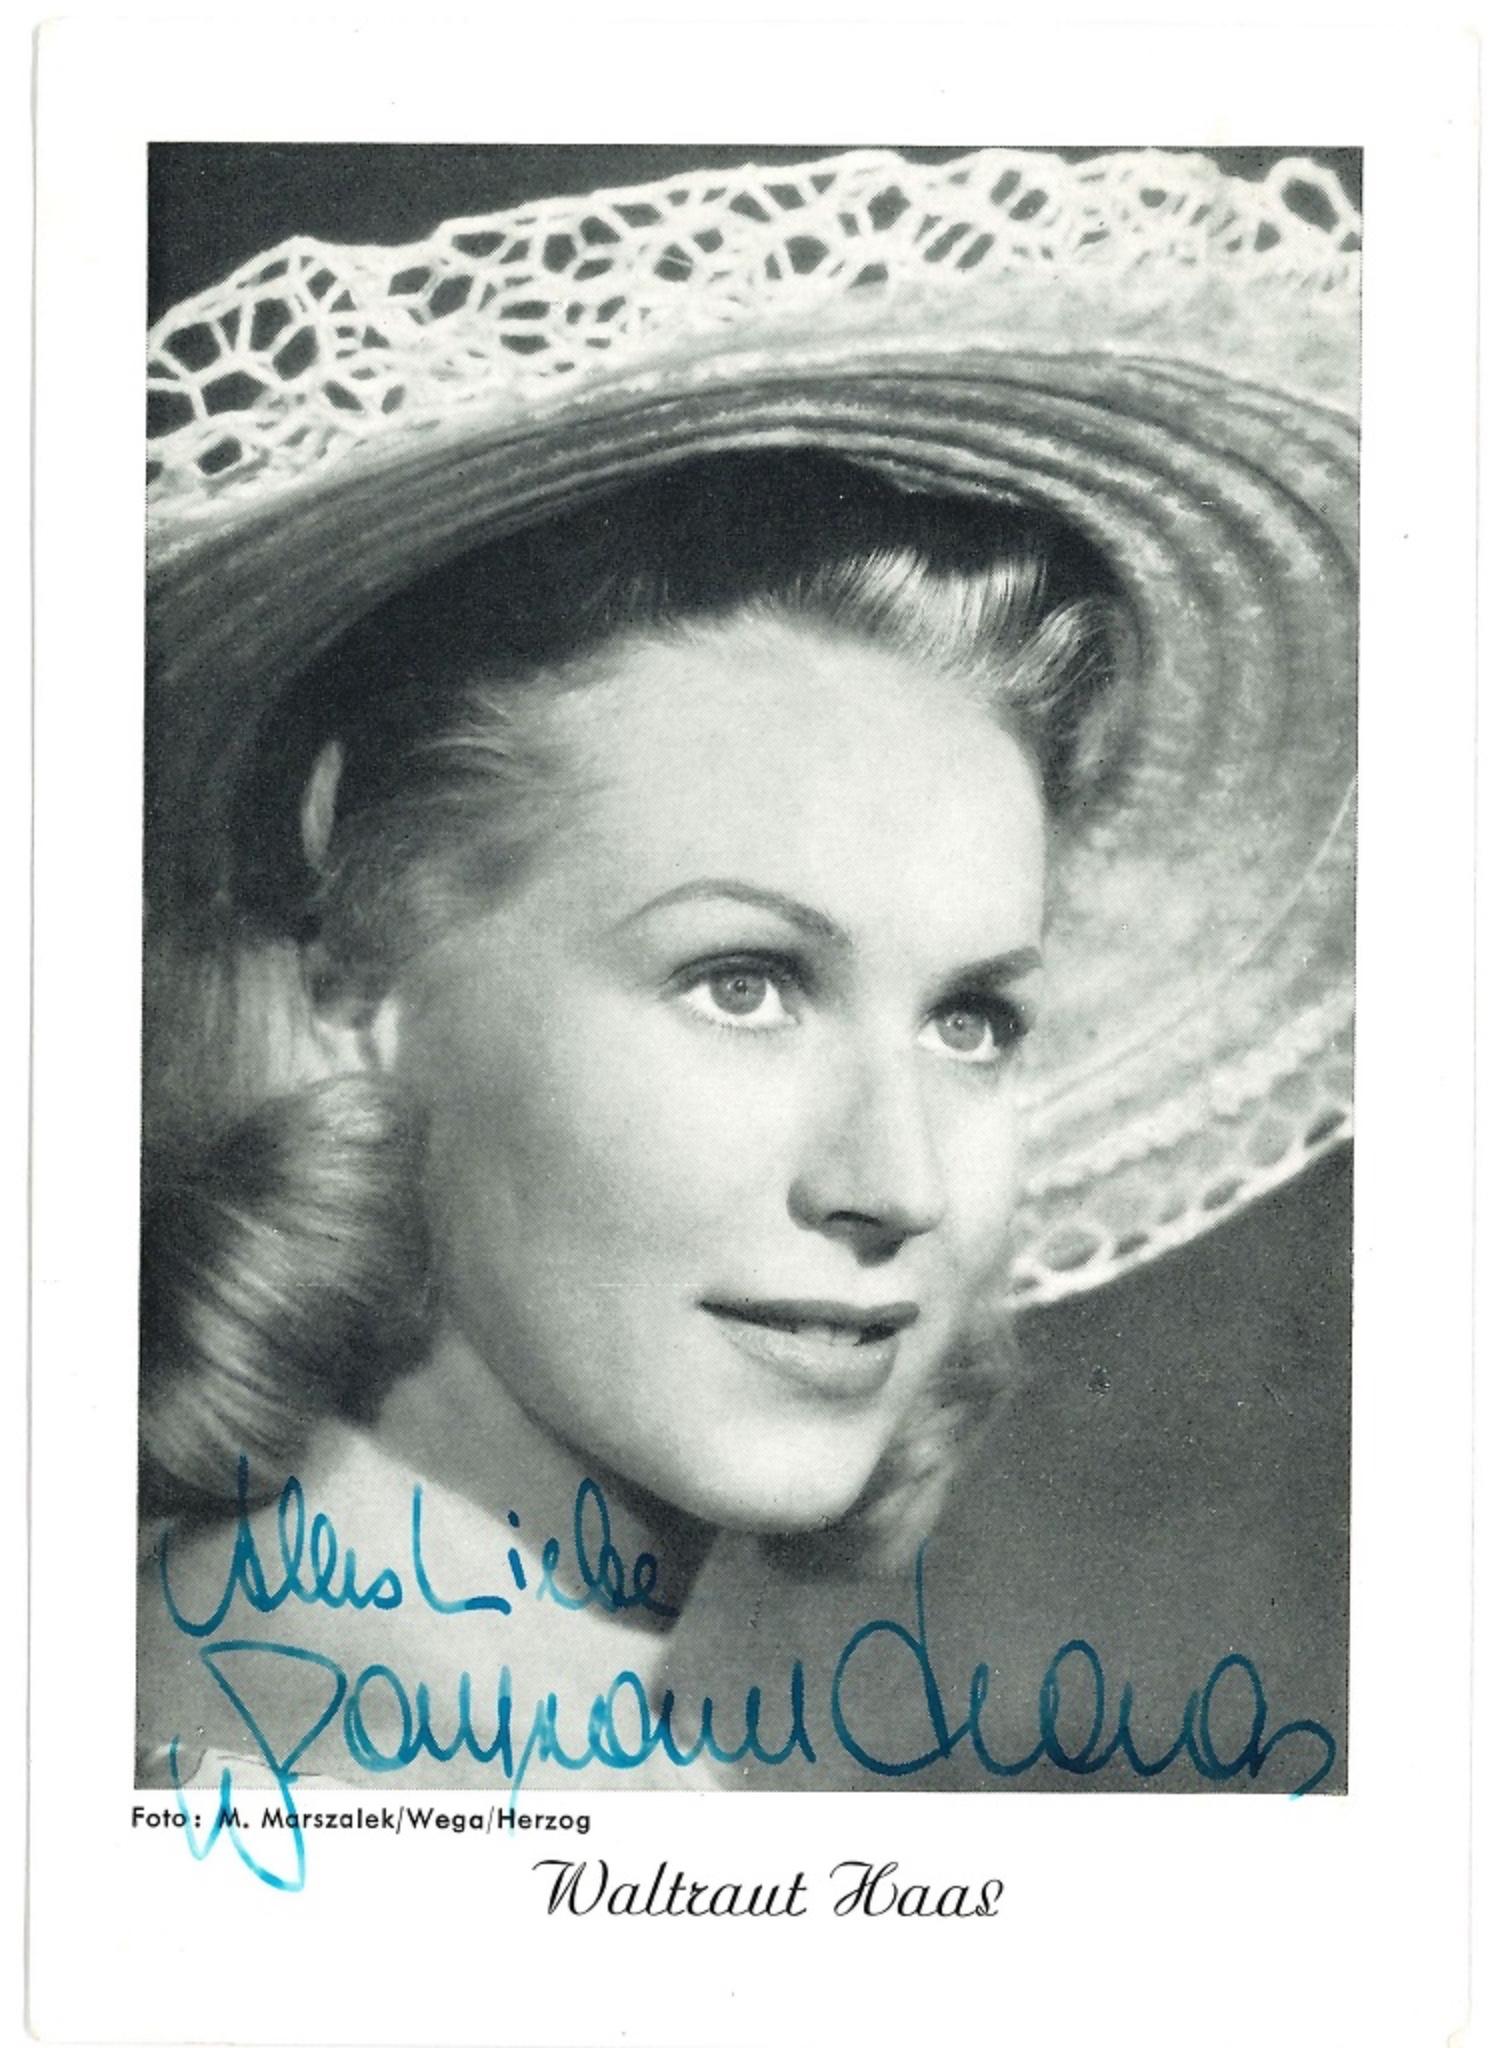 Unknown Portrait Photograph - Autographed Portrait of Waltraut Haas - Vintage b/w Postcard - 1950s